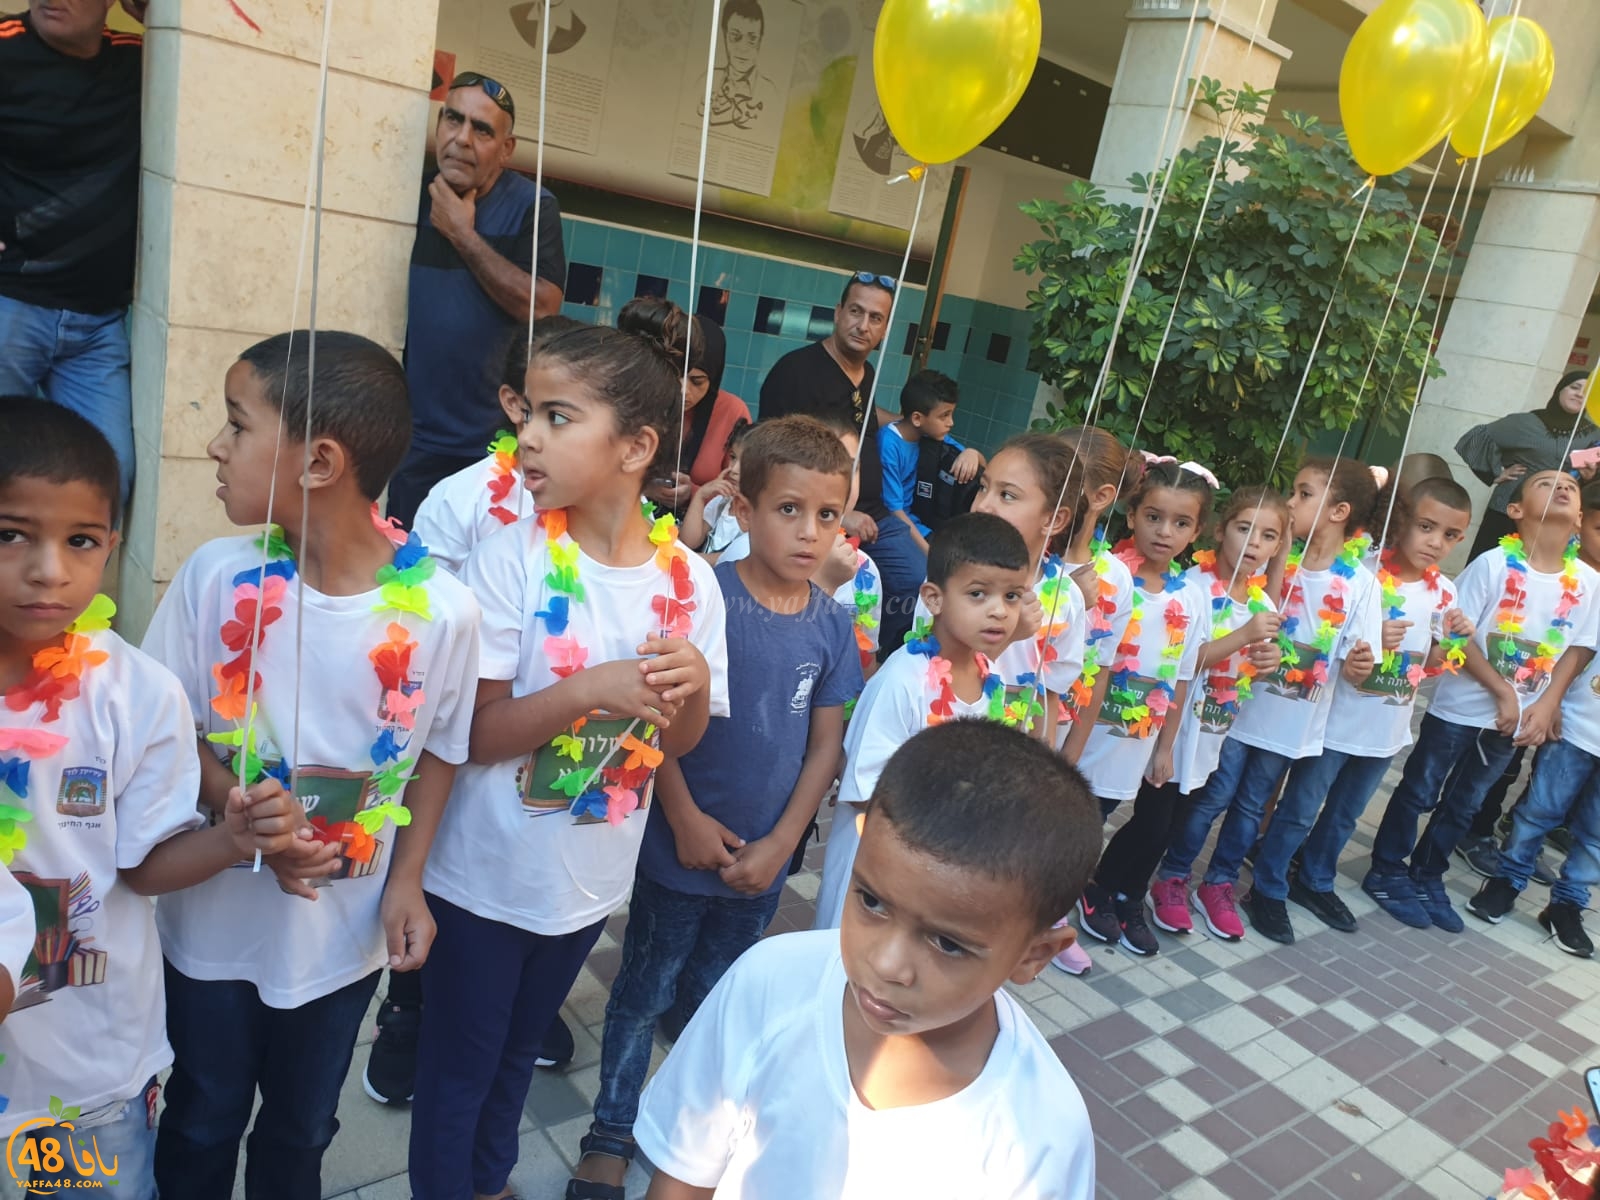 بالصور: افتتاح العام الدراسي الجديد في مدرسة الزهراء الابتدائية باللد 